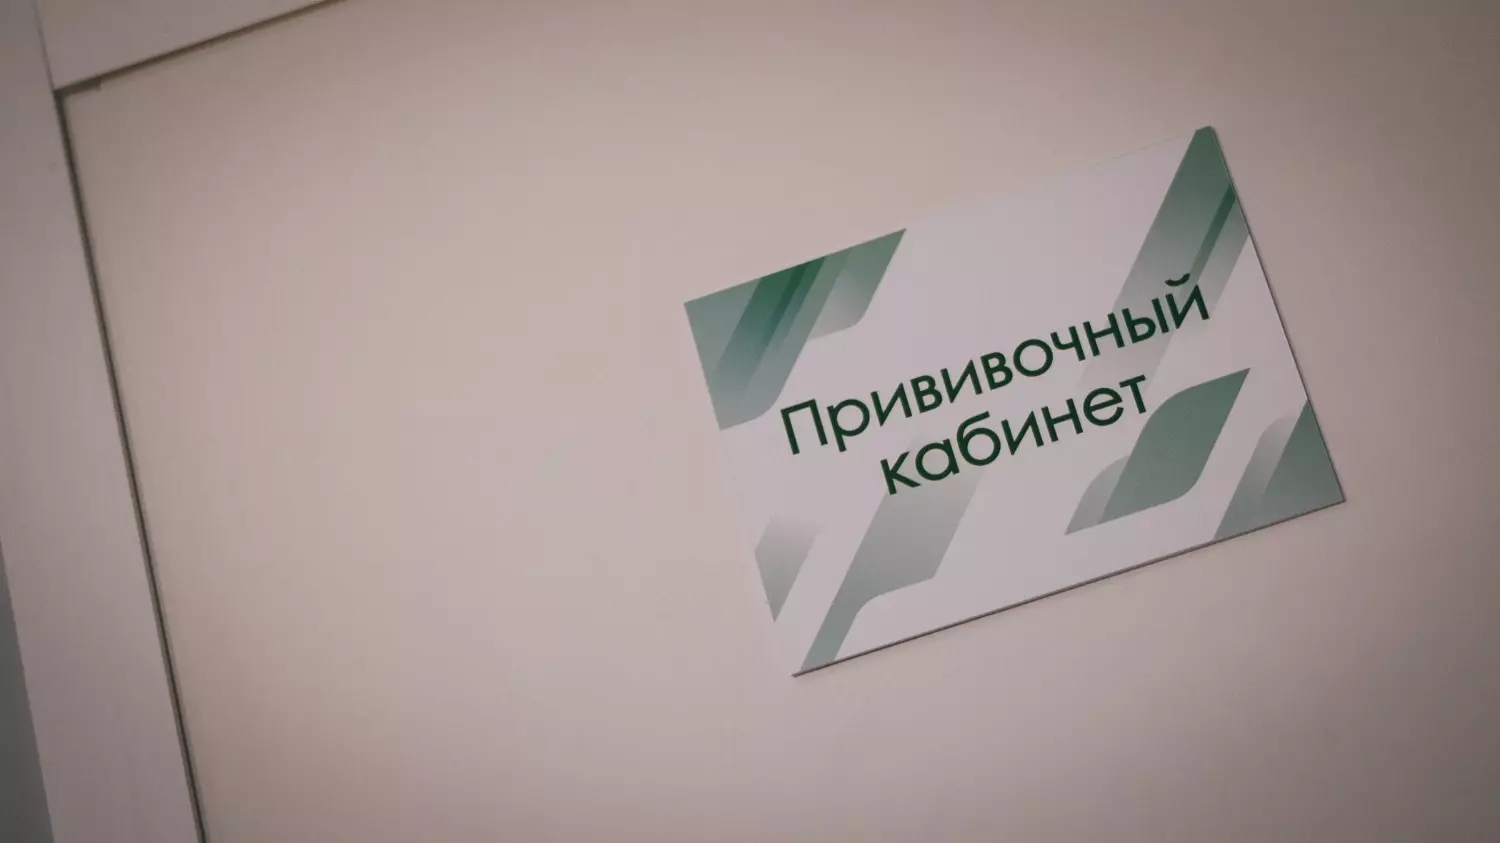 В Нижегородской области есть запас моновакцины против кори